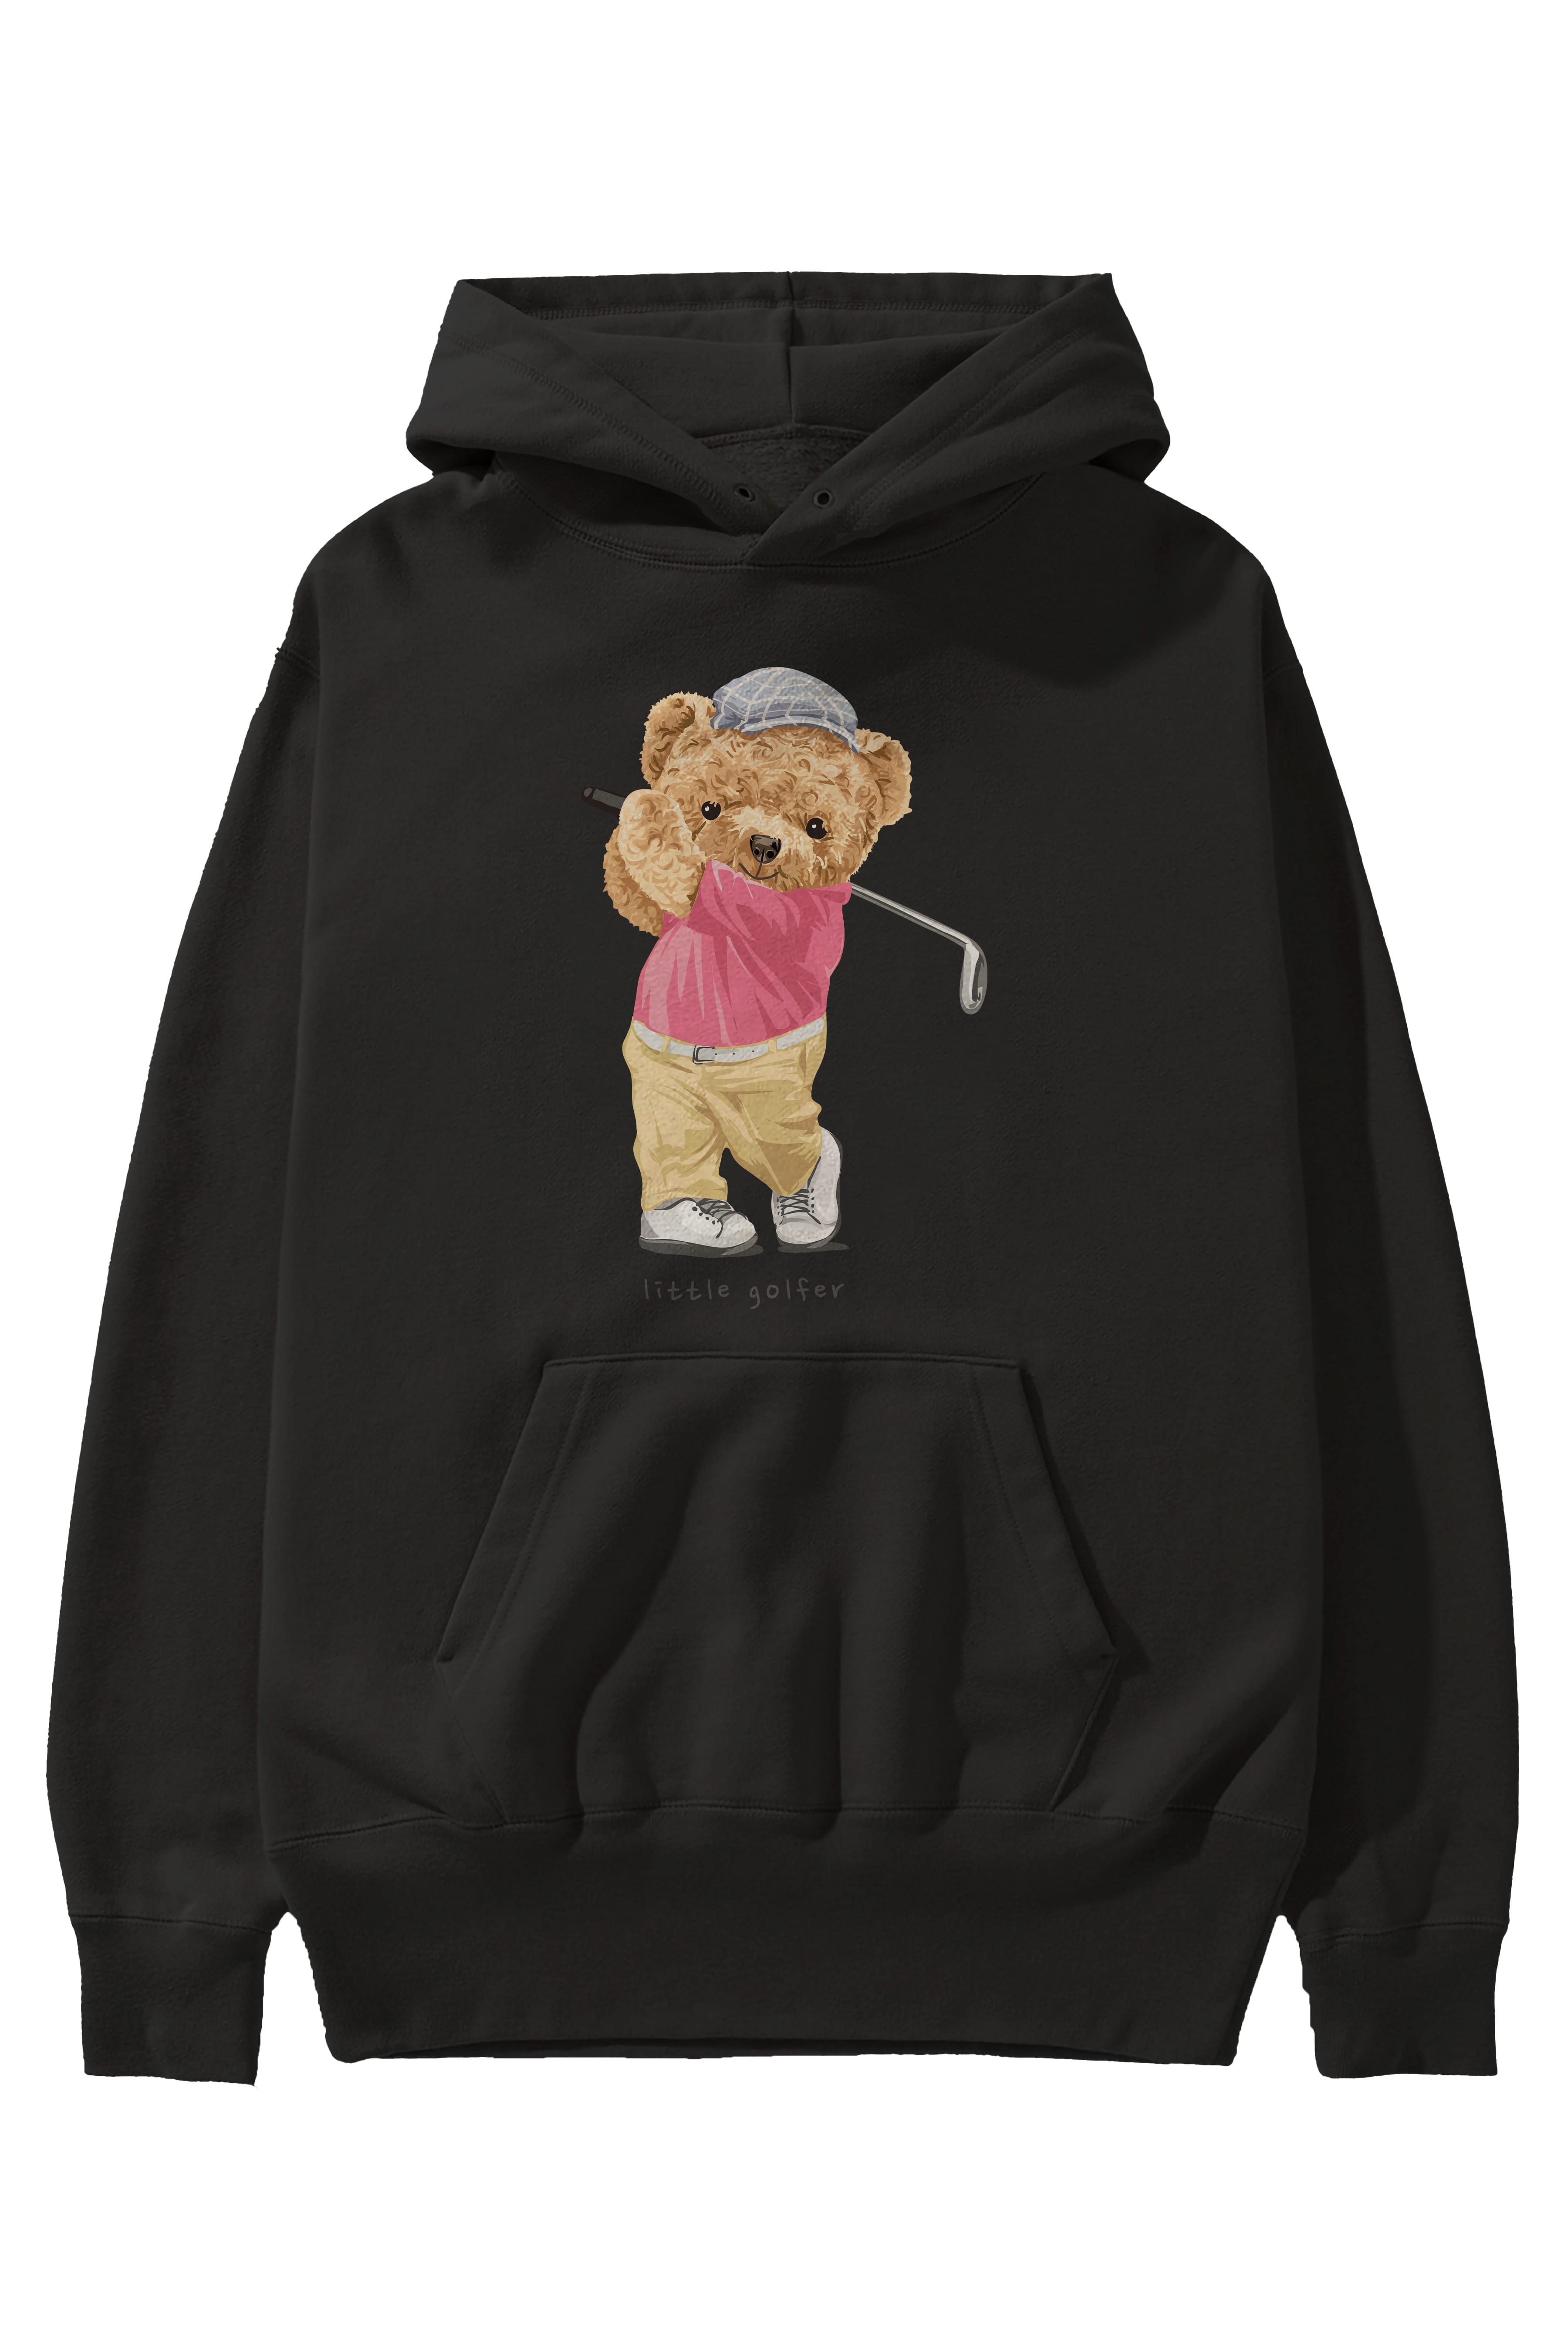 Teddy Bear Little Golfer Ön Baskılı Hoodie Oversize Kapüşonlu Sweatshirt Erkek Kadın Unisex